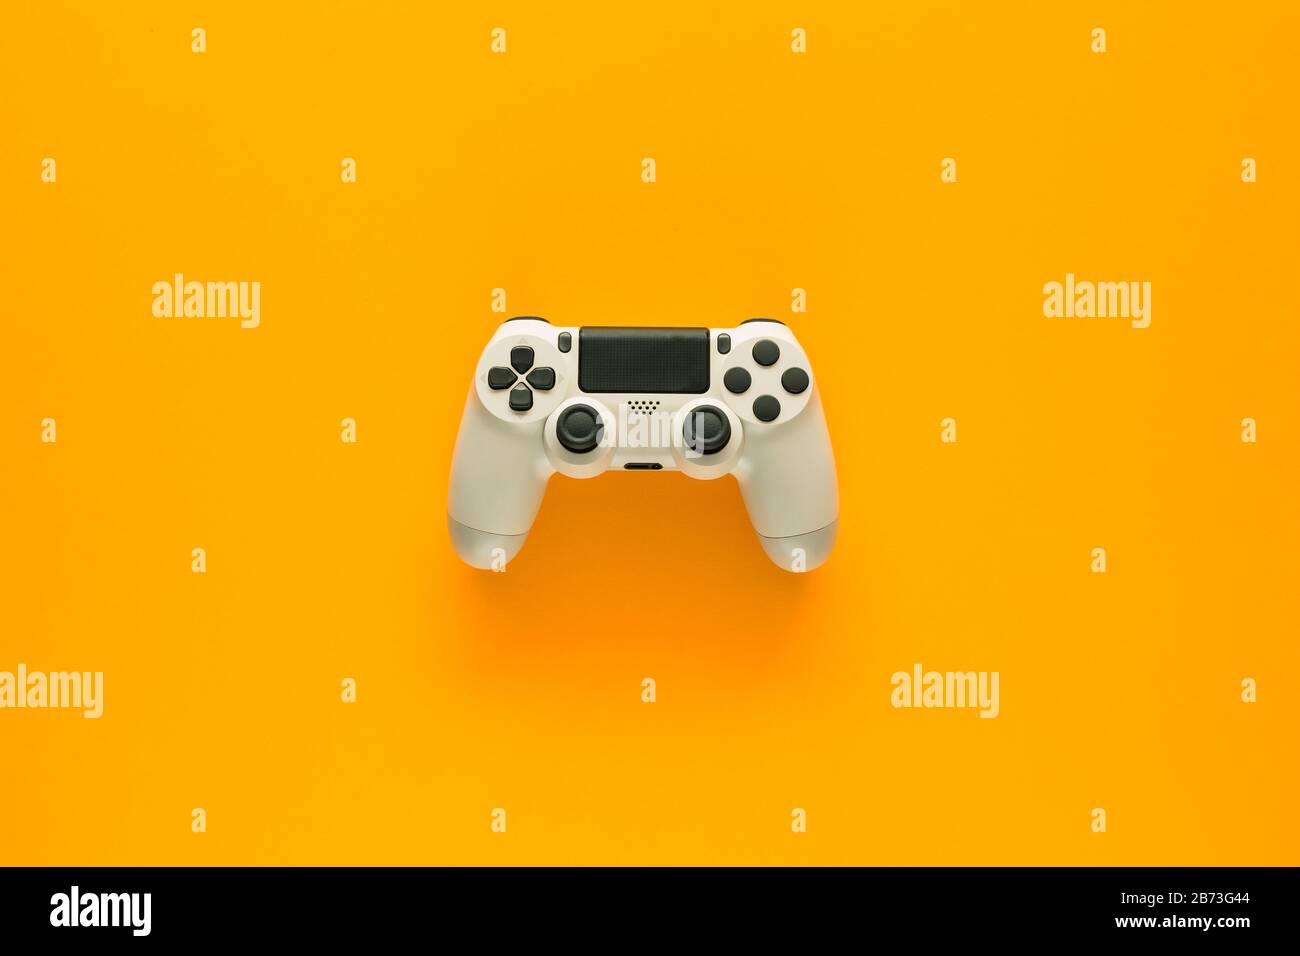 Stockfoto eines weißen Gamepads inmitten eines gelben Hintergrunds Stockfoto